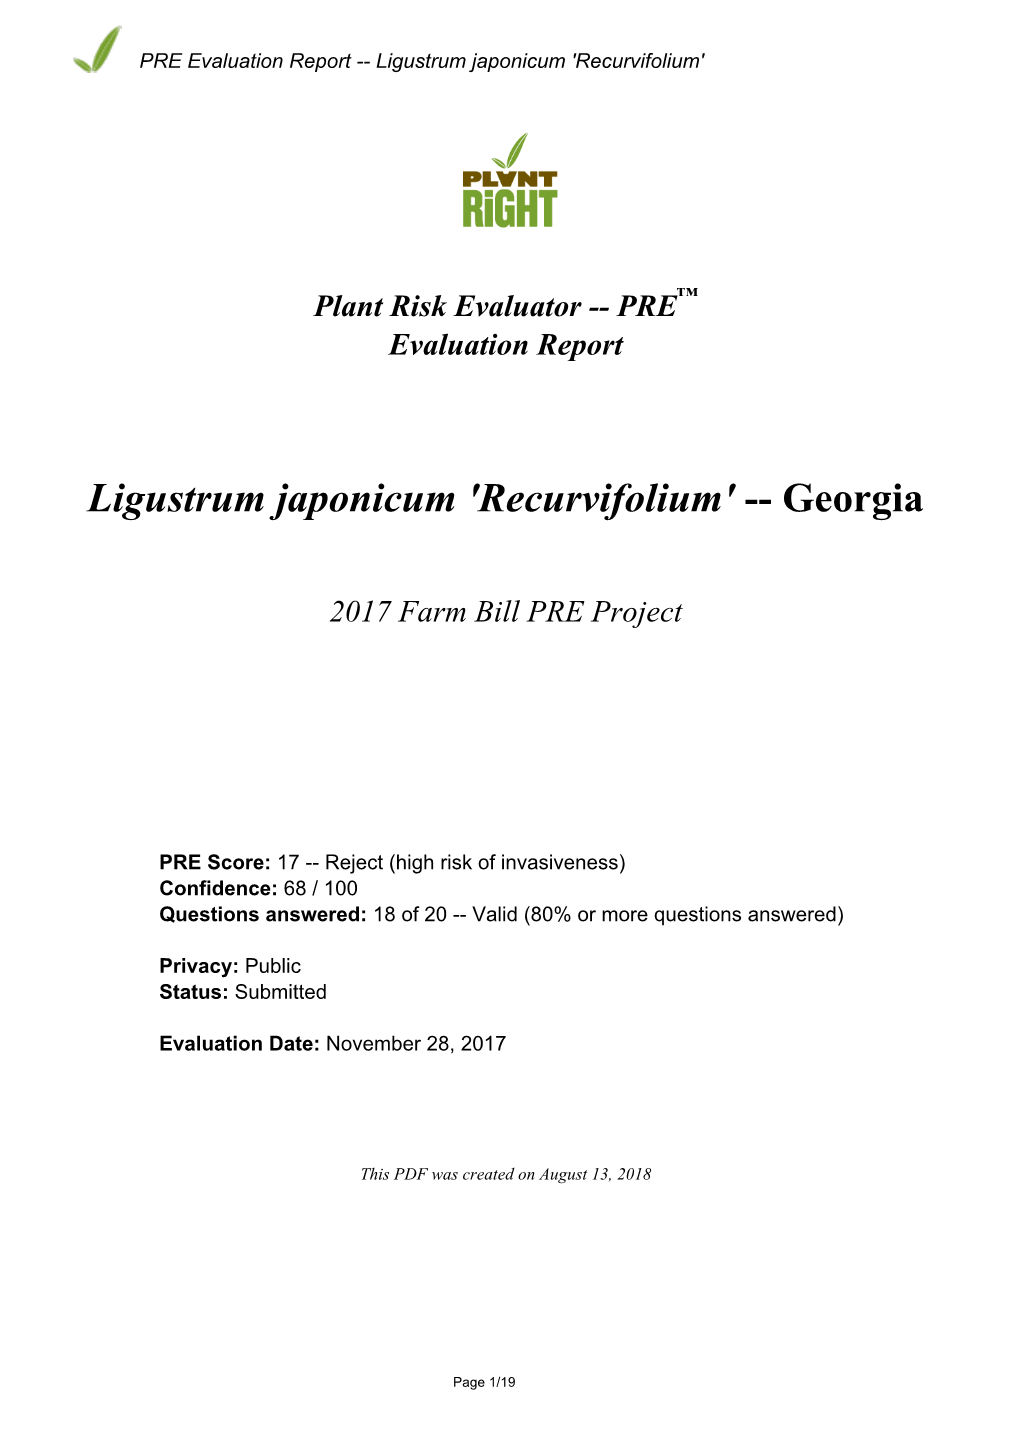 PRE Evaluation Report for Ligustrum Japonicum 'Recurvifolium'